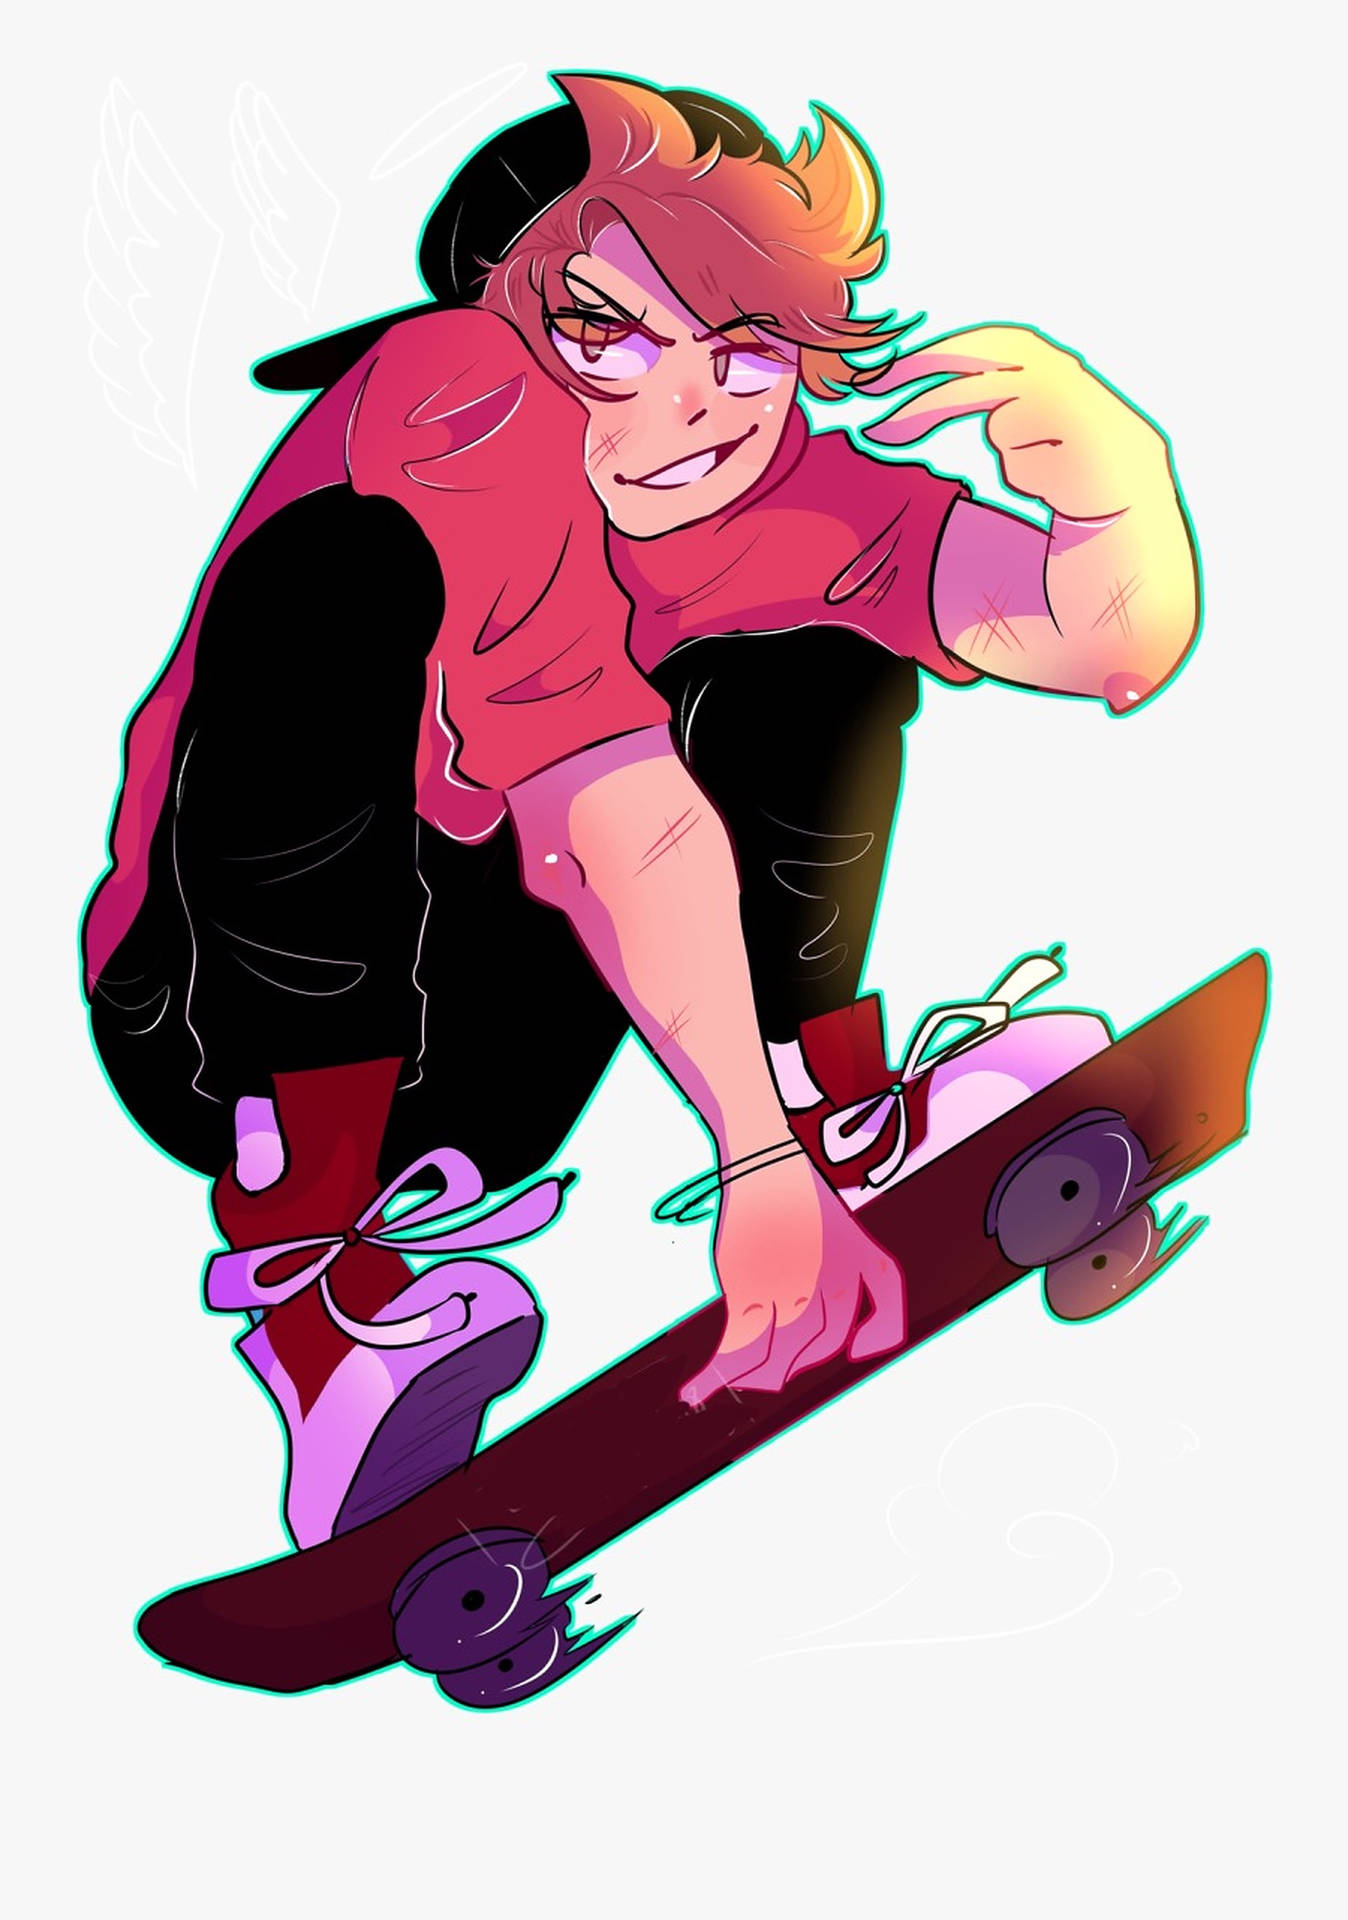 Aesthetic Skater Boy Digital Art Background